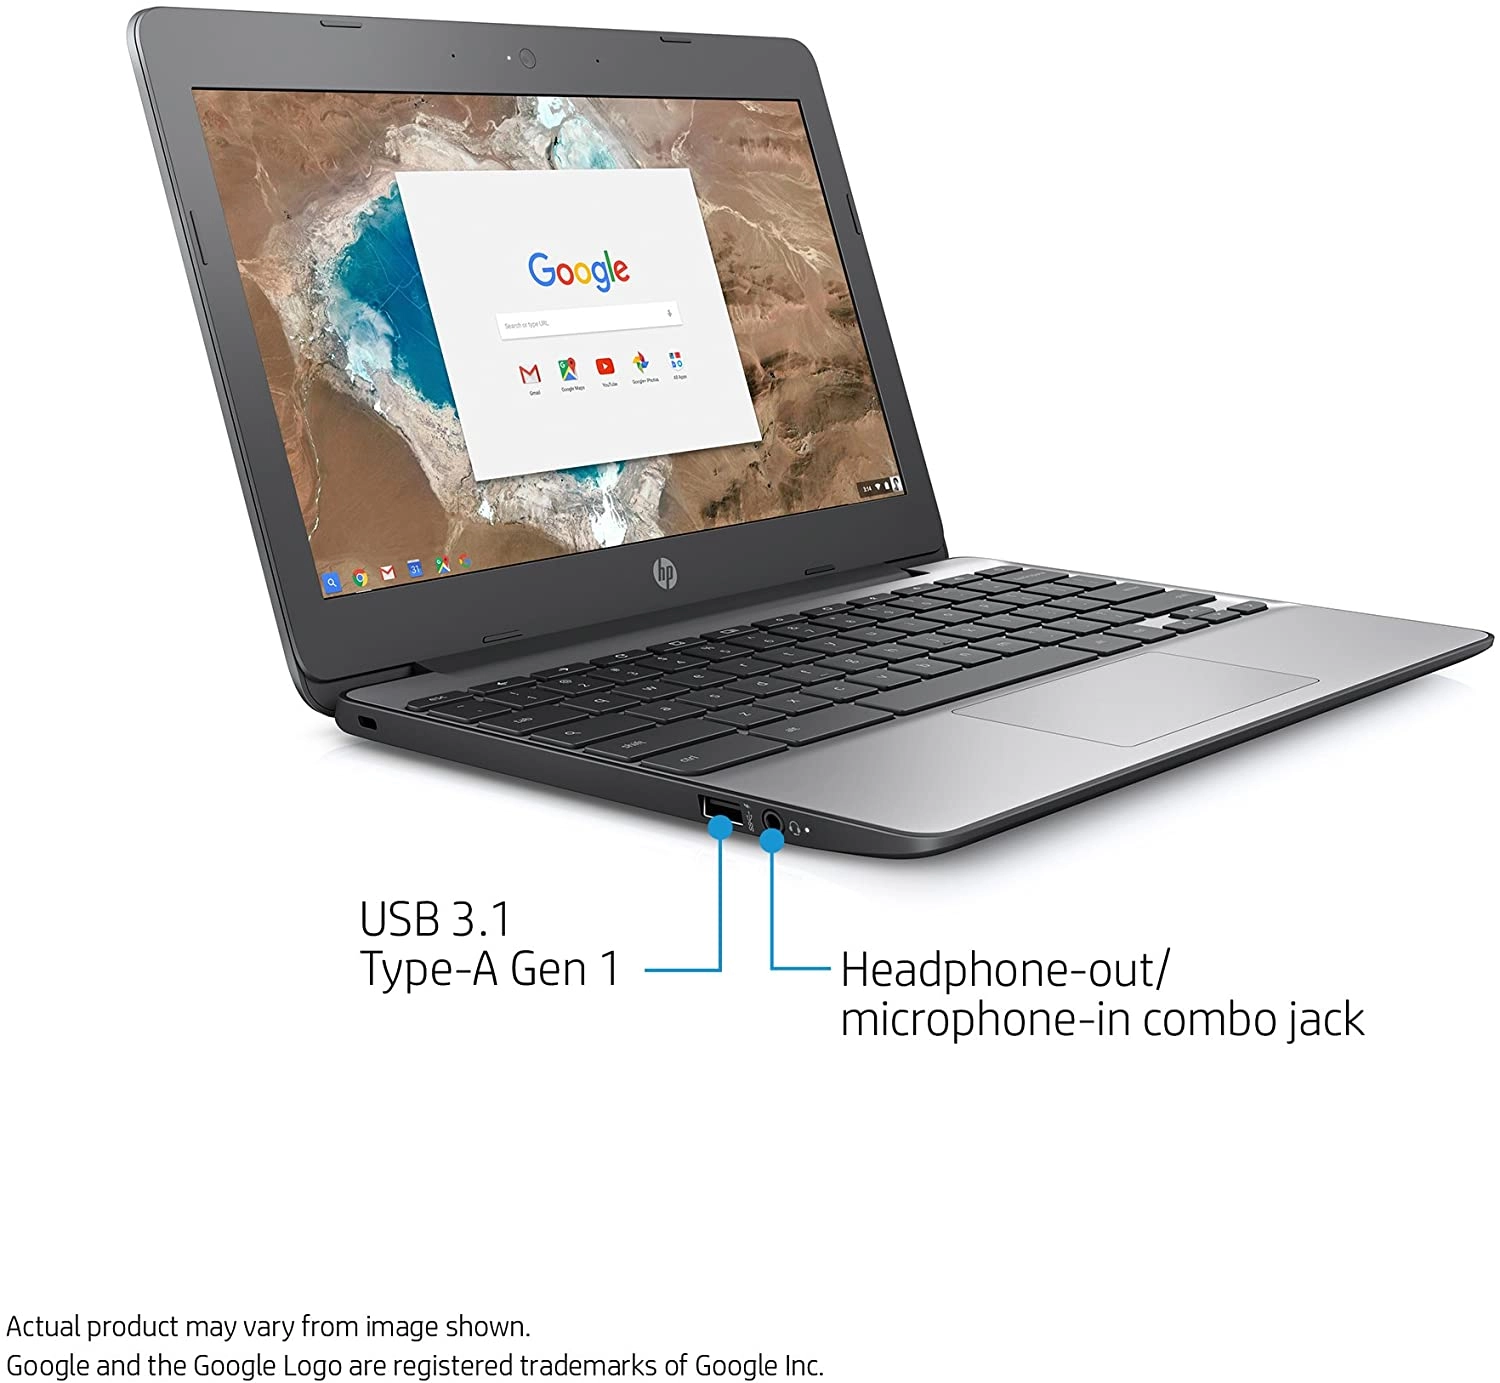 HP N3060 laptop image